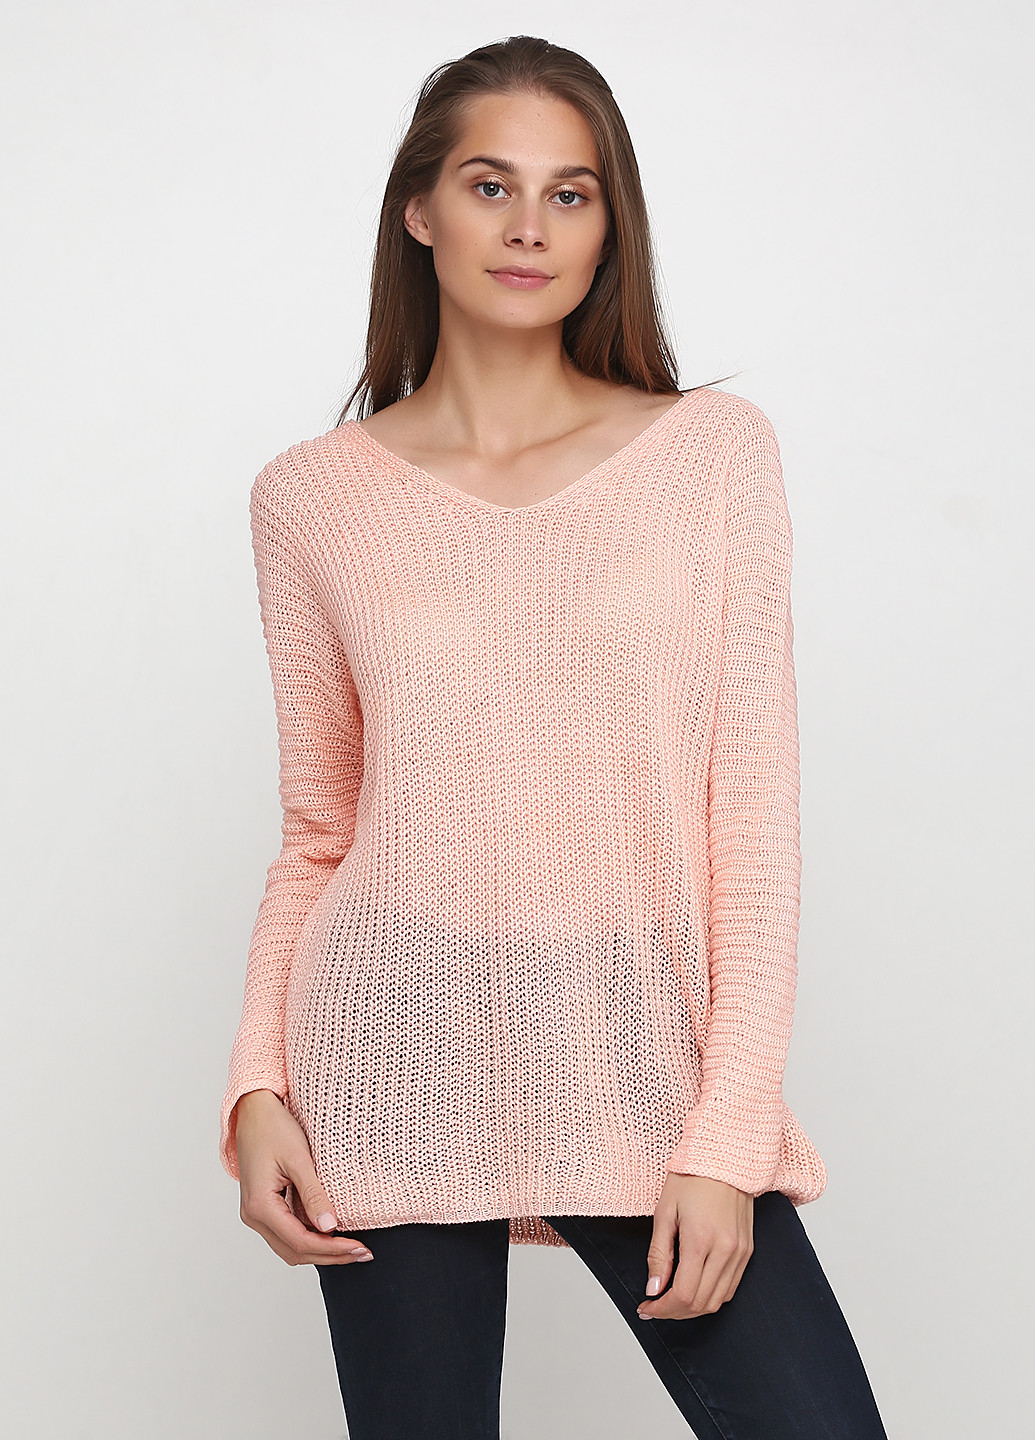 Светло-розовый демисезонный пуловер пуловер Eser